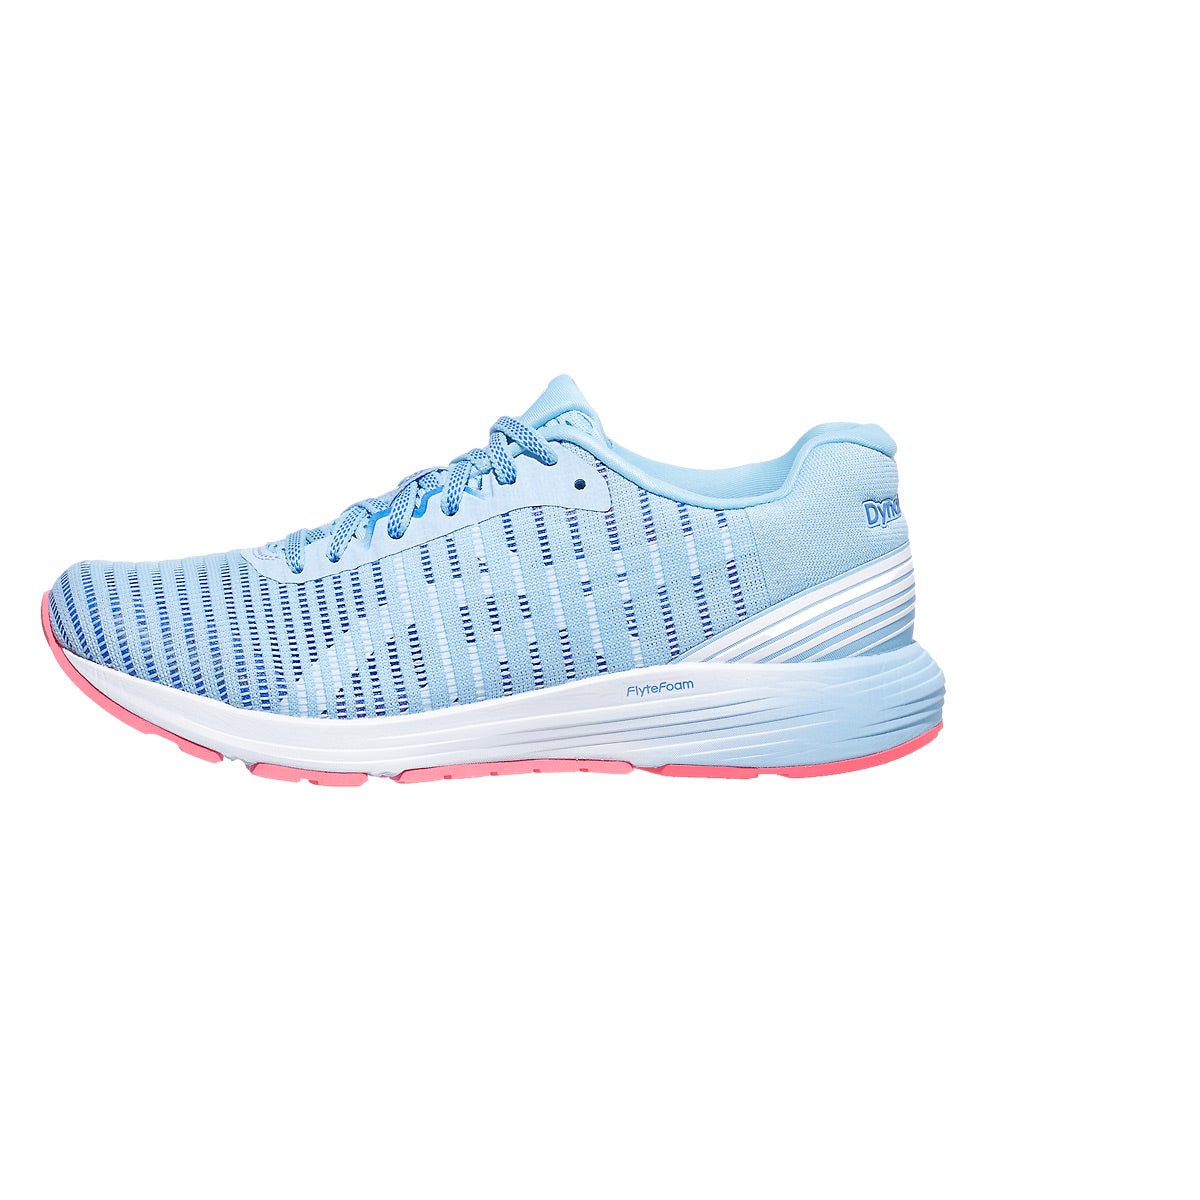 ASICS DynaFlyte 3 Women's Shoes Skylight/White 360° View | Running ...